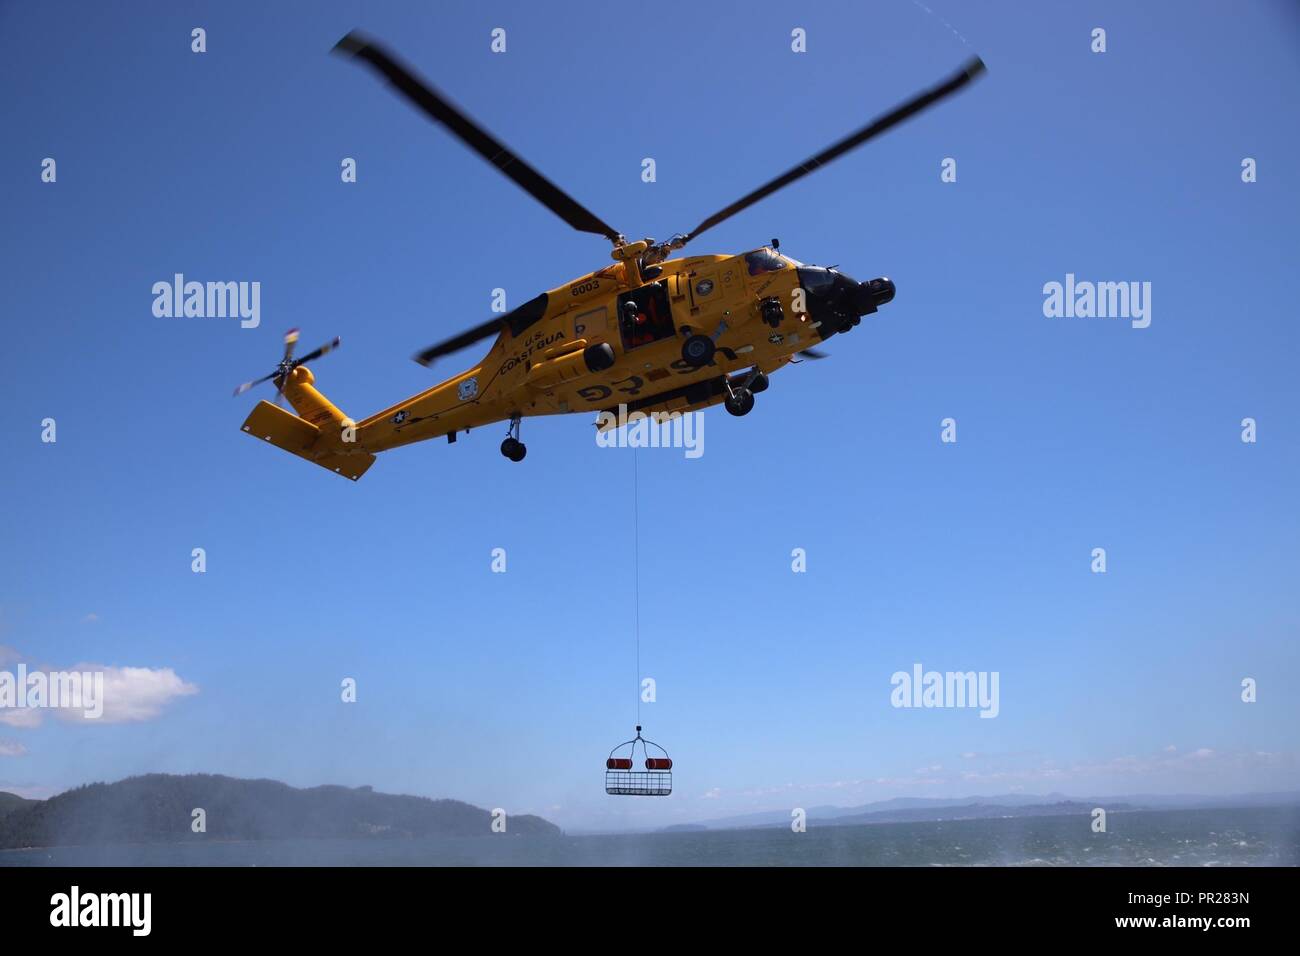 Una tripulación a bordo de un helicóptero MH-60 Jayhawk de Guardacostas Río Columbia Sector reduce un canasto de rescate durante ejercicios de entrenamiento de rutina en el Río Columbia, cerca de Ilwaco, Washington, 3 de julio de 2018. Una canasta de rescate es uno de los equipos más utilizados por la tripulación. La Guardia Costera de EE.UU. Foto por Petty oficial de 2ª clase Aaron Wills. Foto de stock